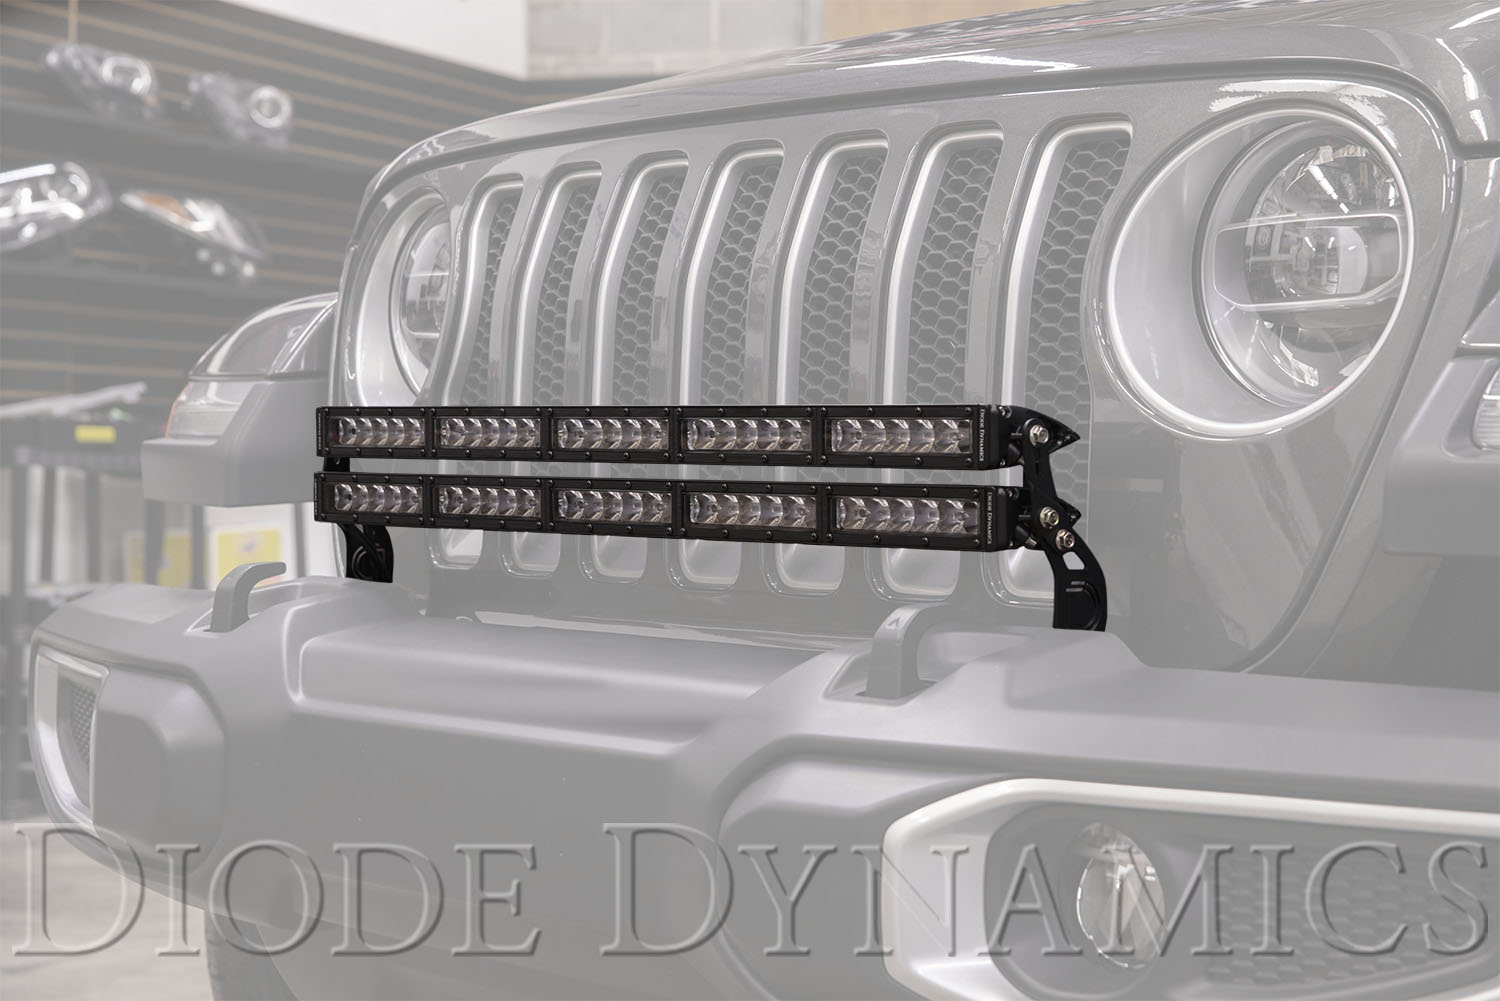 Total 74+ imagen jeep wrangler bumper led light bar